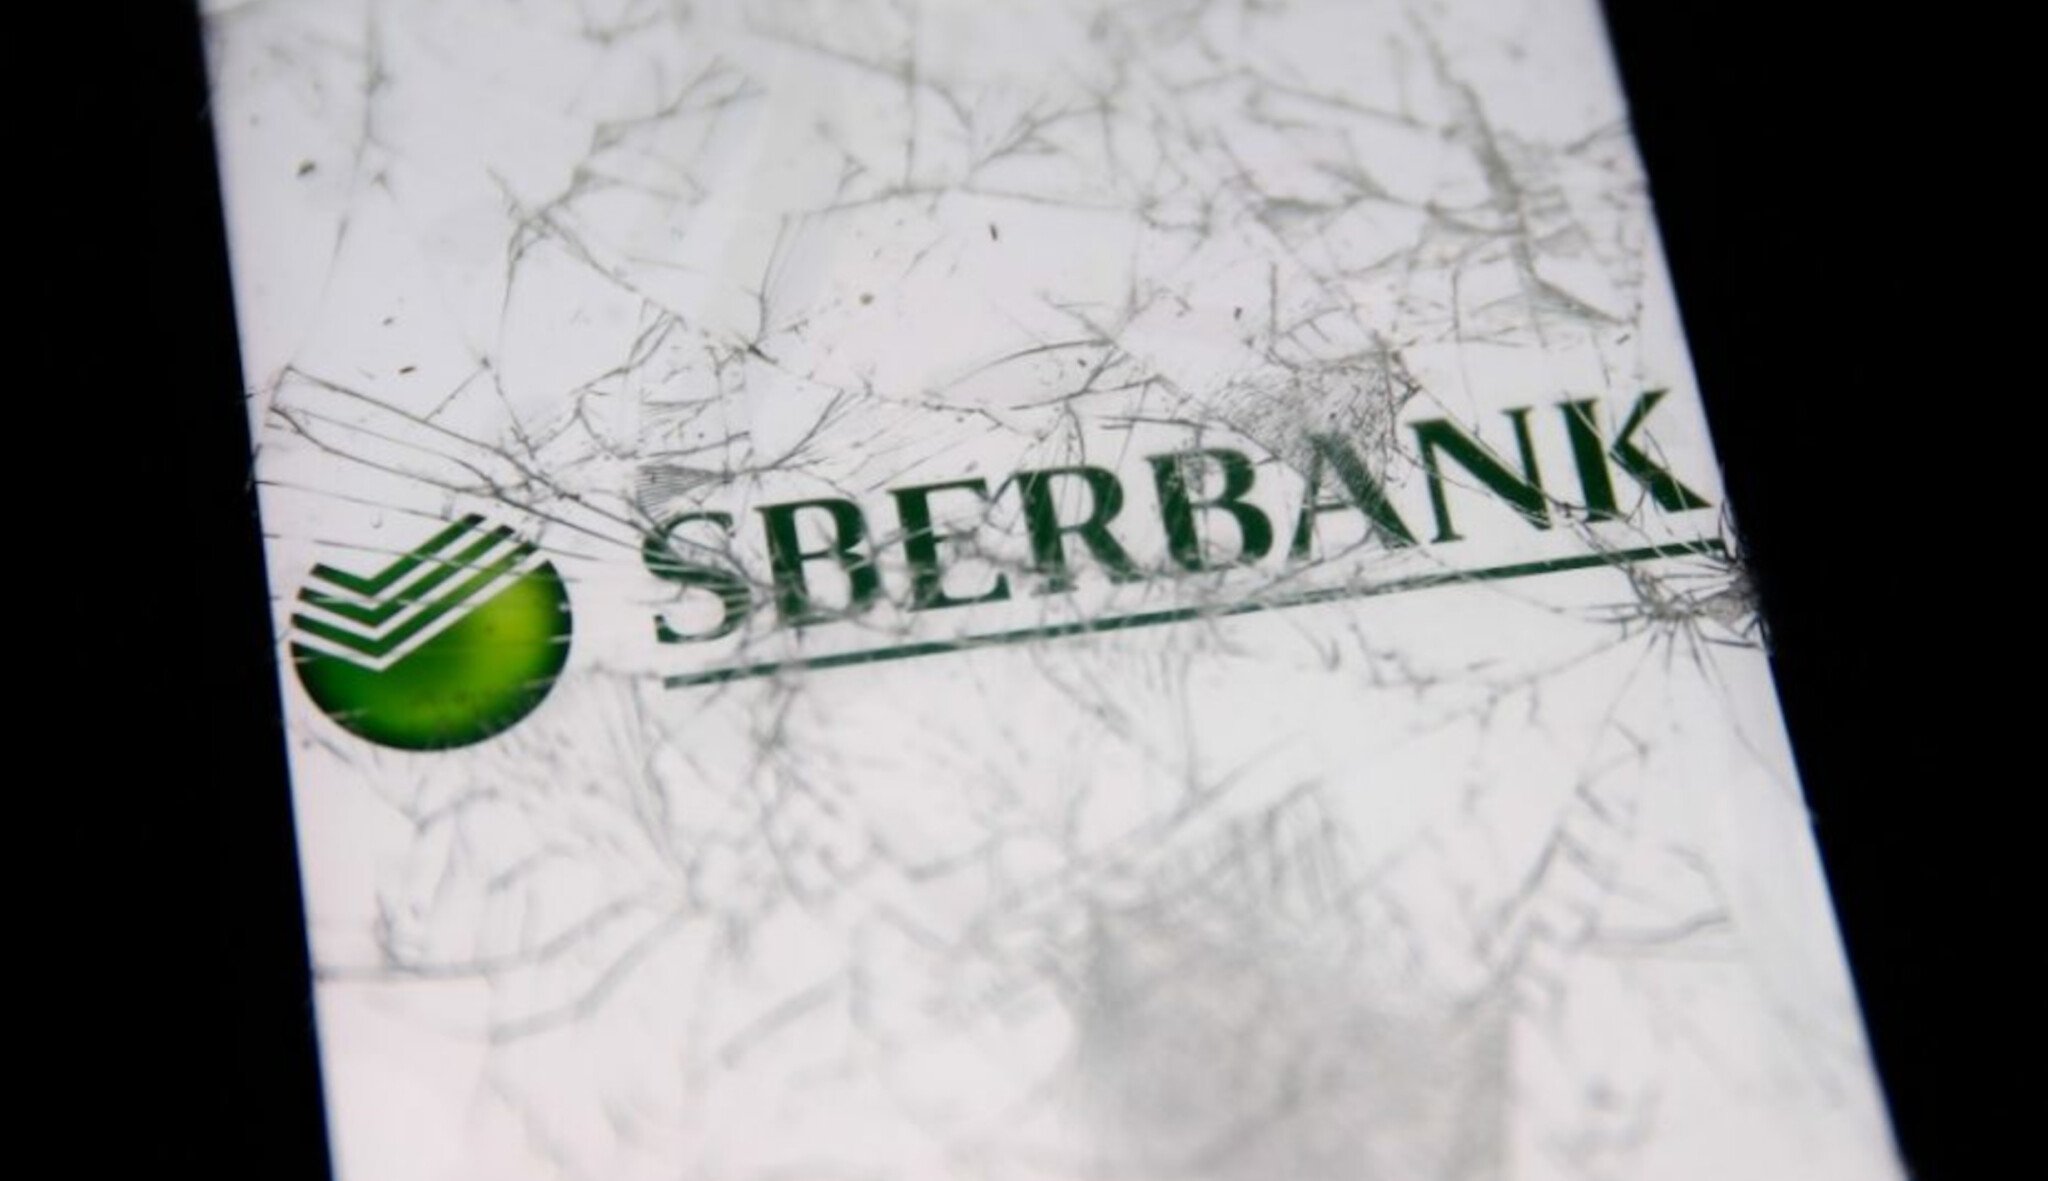 Začíná největší výplata zkrachovalé banky. Klienti Sberbank dostanou 24,2 miliardy